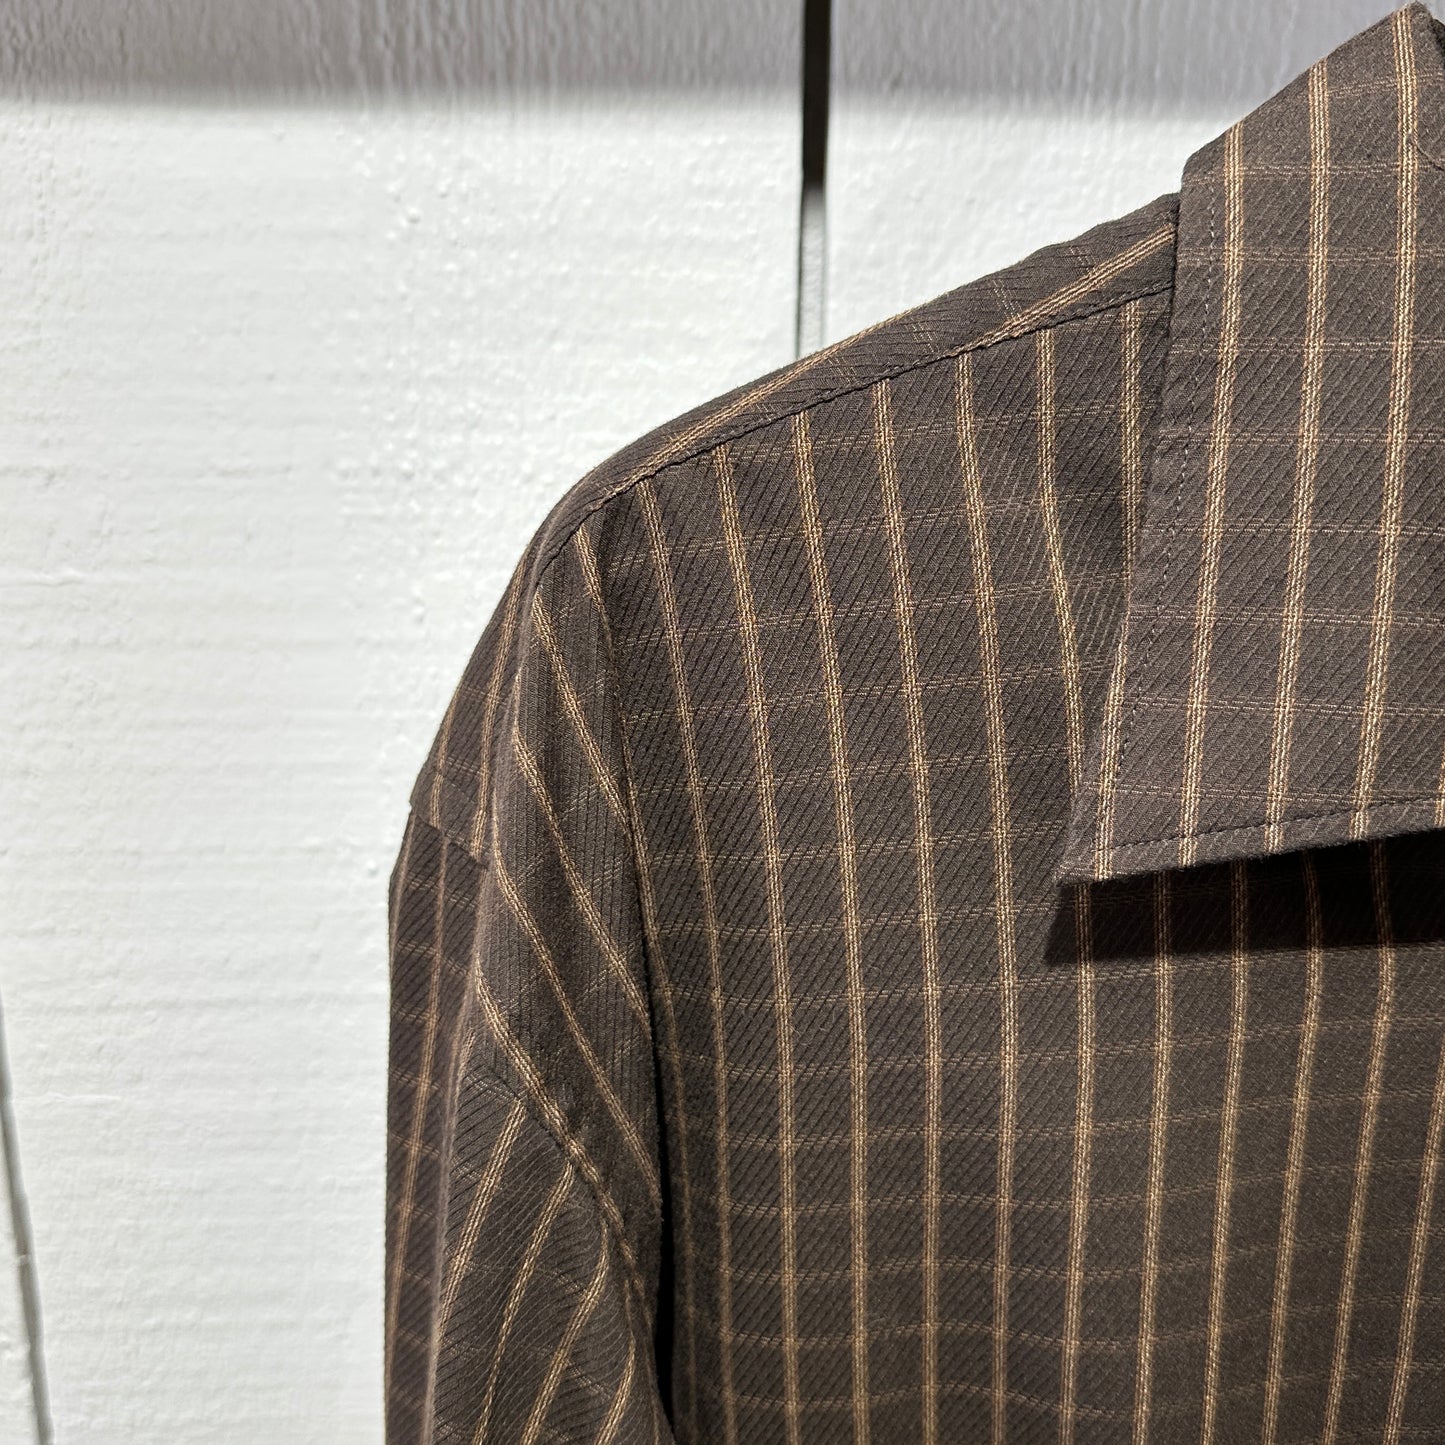 Pre-Loved Van Heusen Long Sleeve in Brown Plaid XL